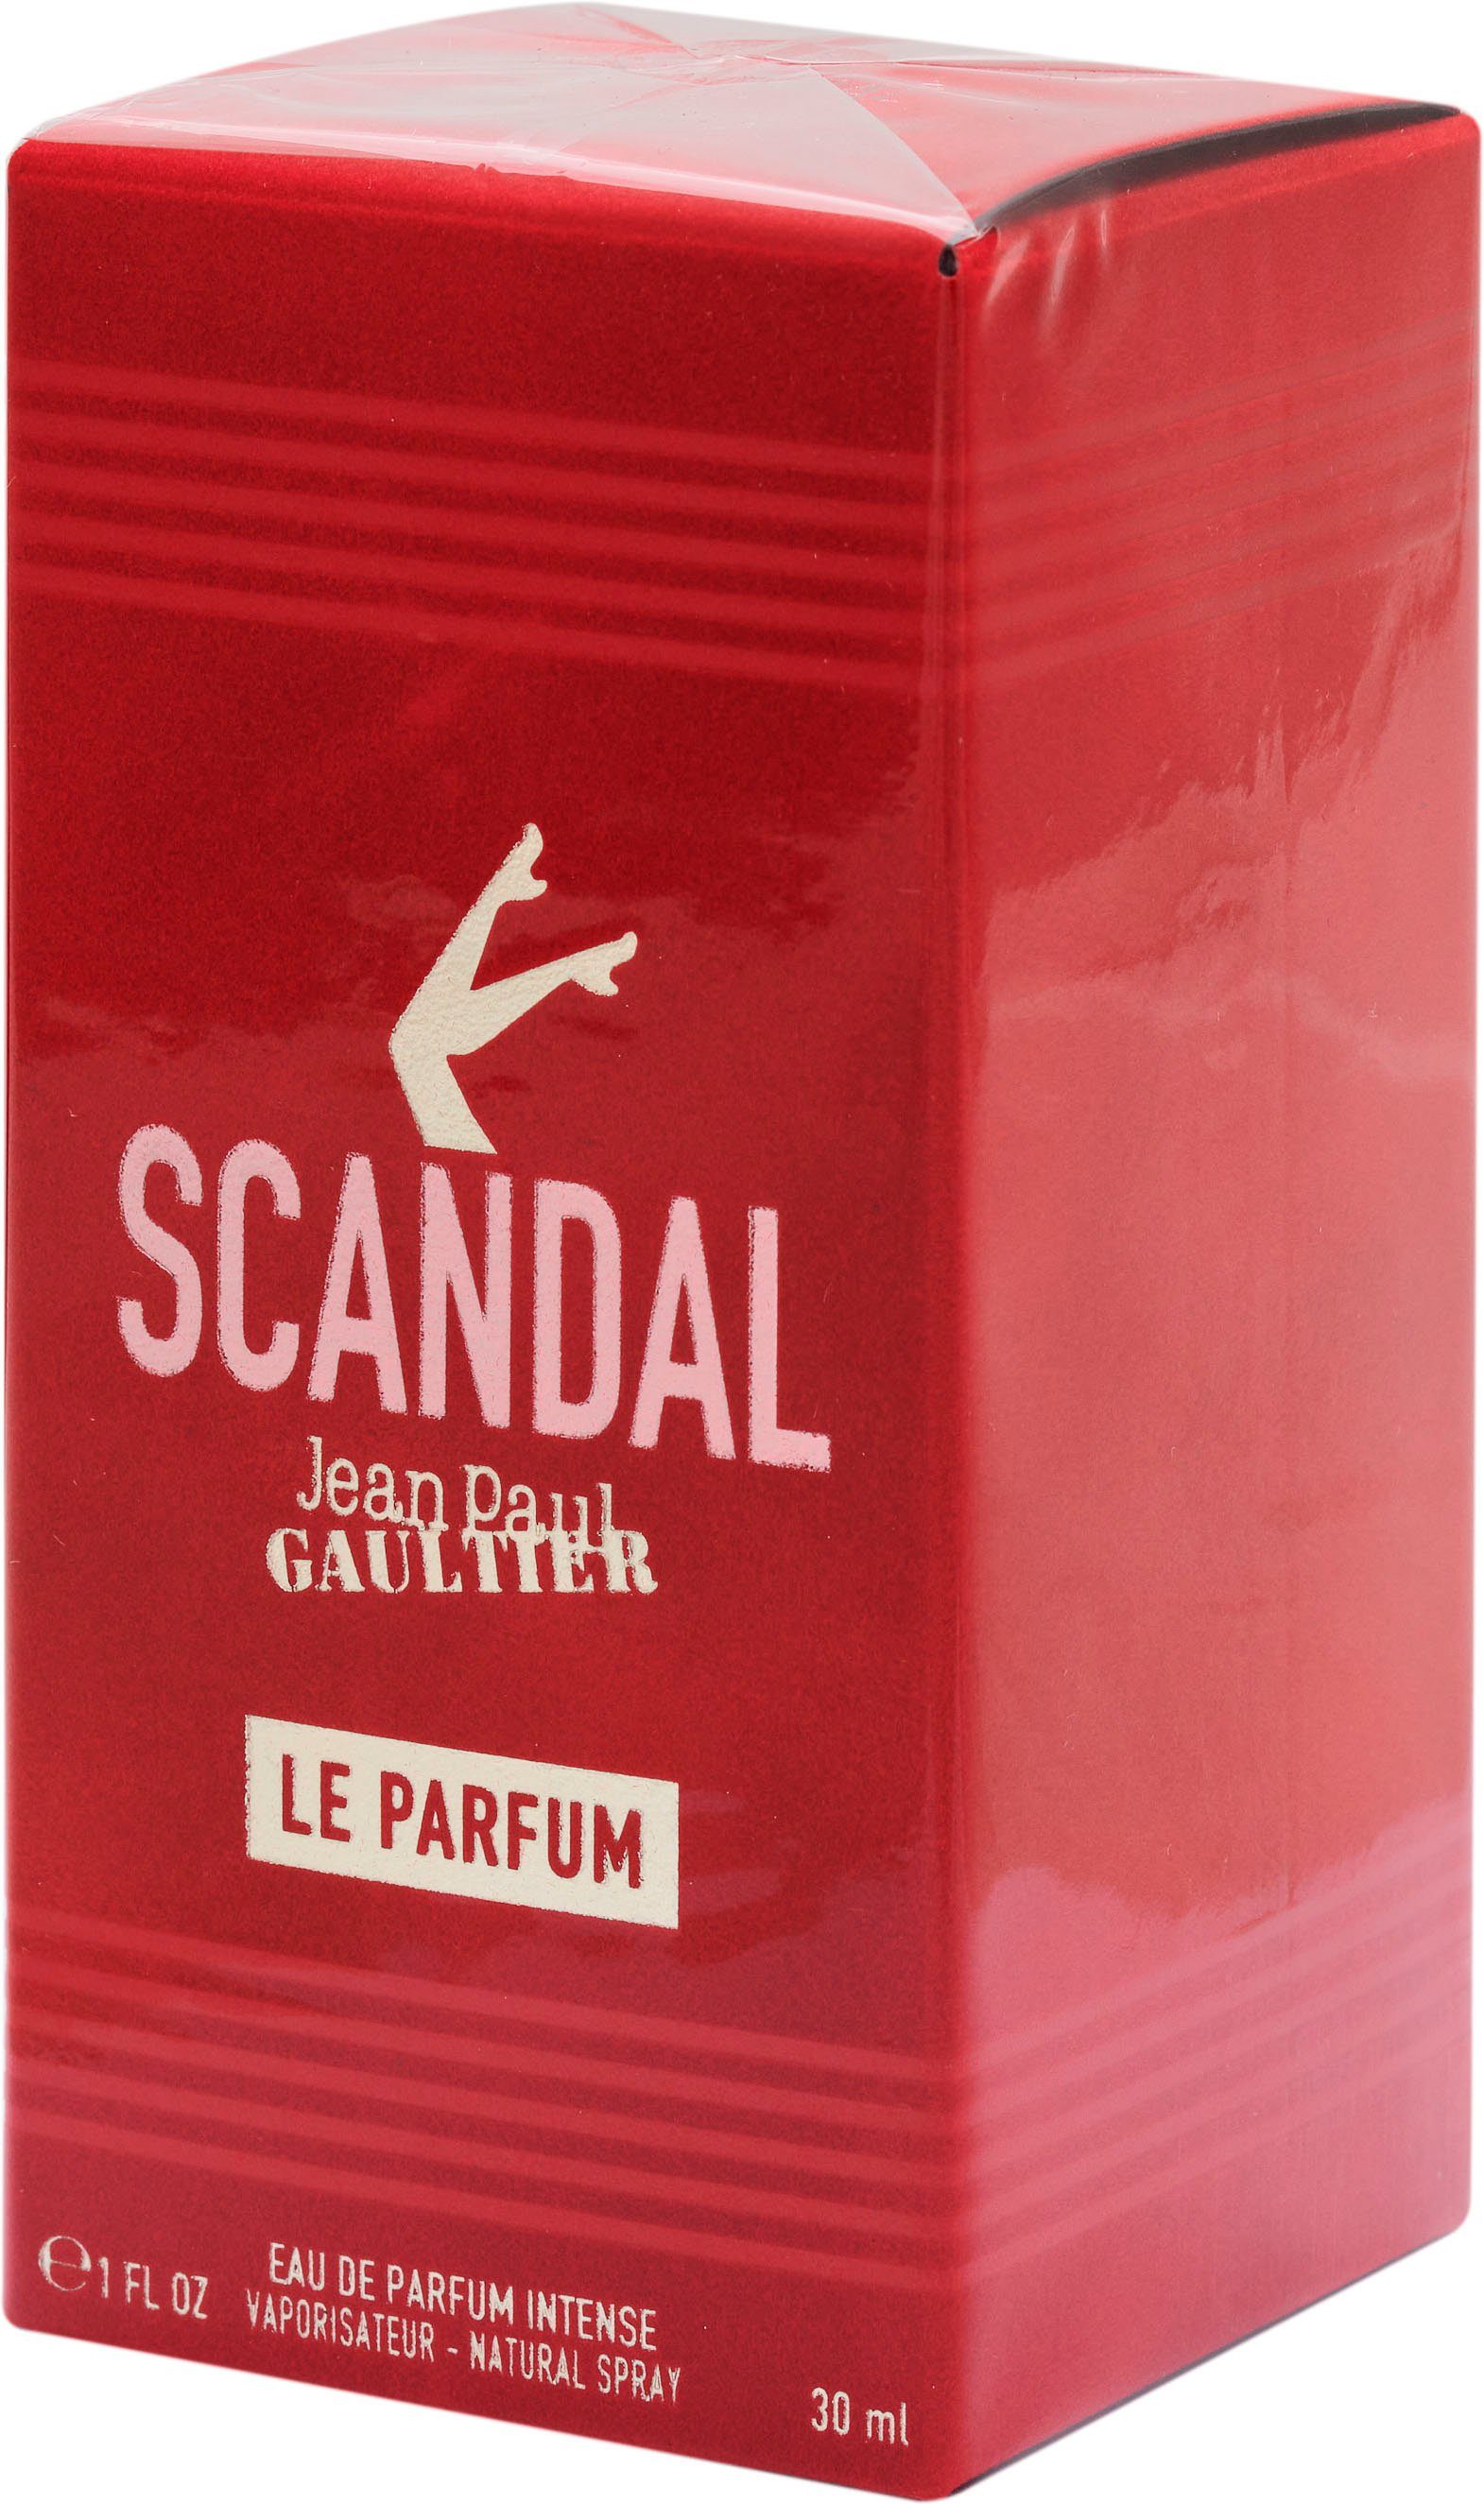 PAUL Parfum Le Scandal Eau Parfum JEAN de GAULTIER